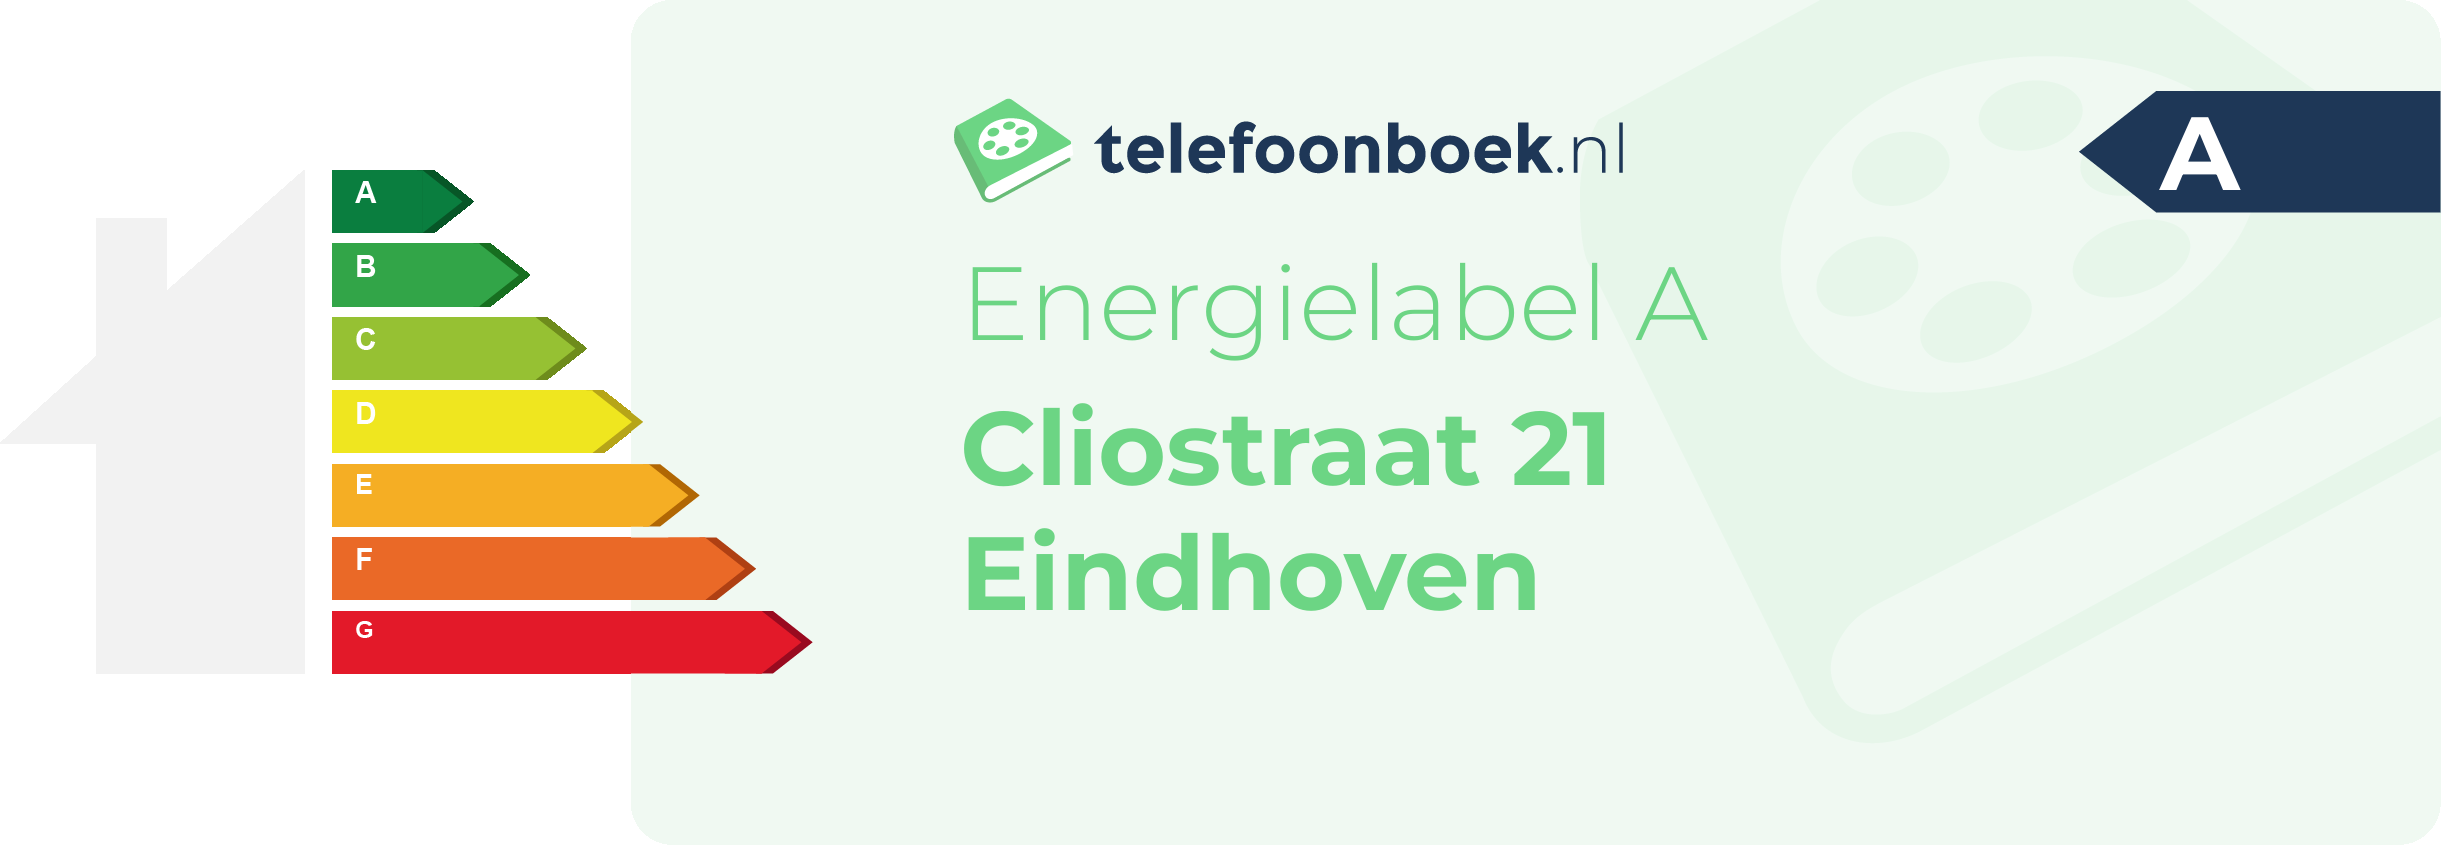 Energielabel Cliostraat 21 Eindhoven